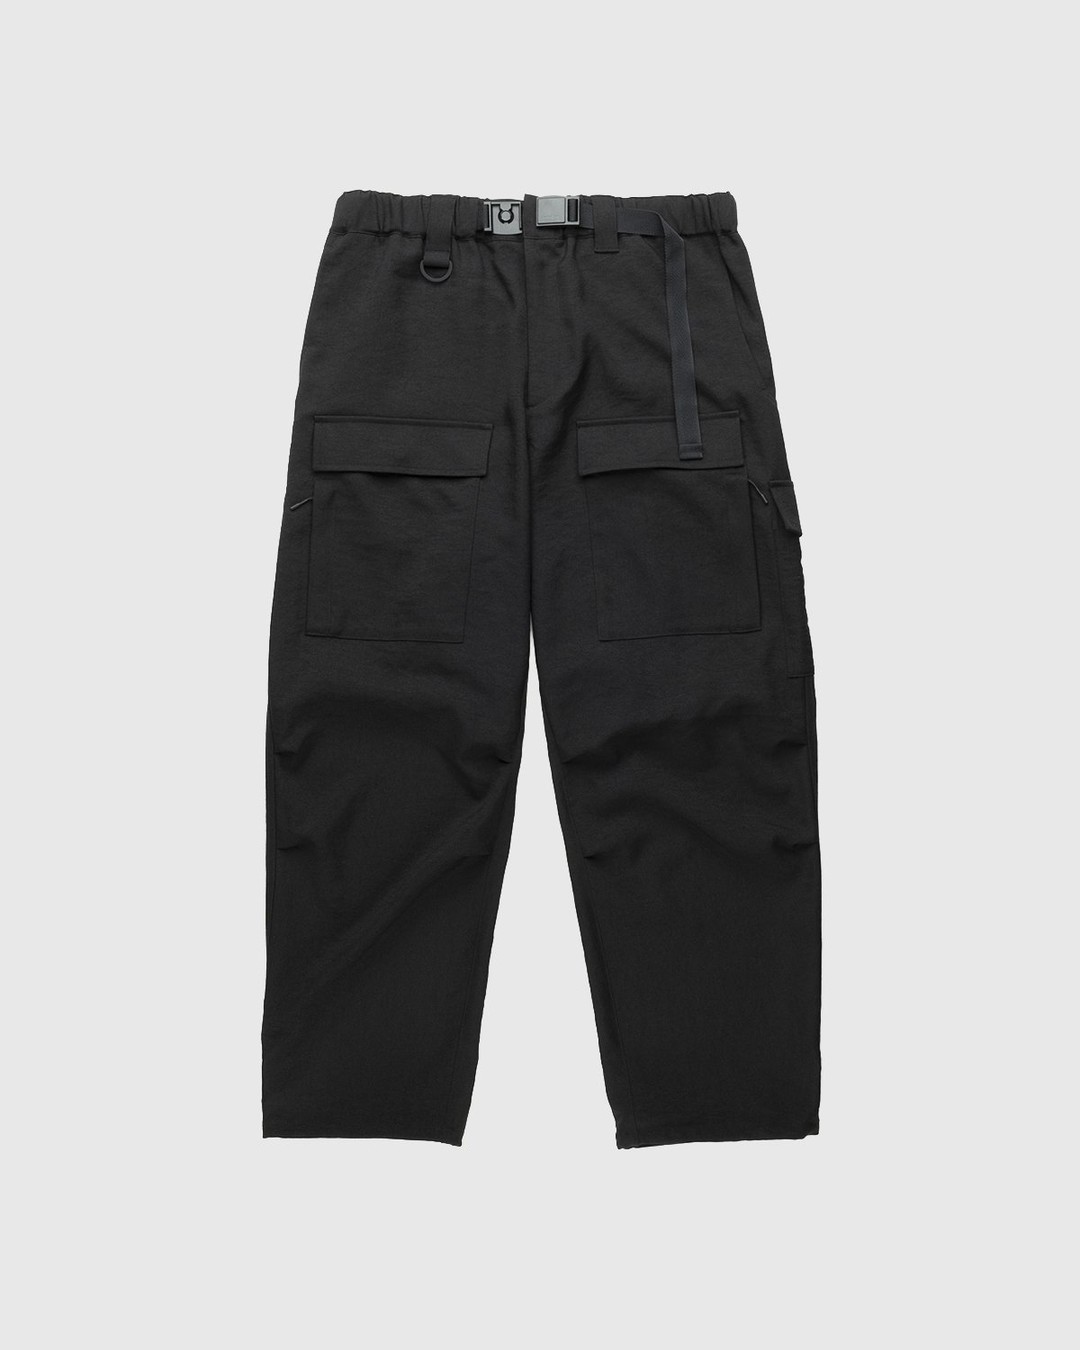 Y-3 – Classic Sport Uniform Cargo Pants Black - Cargo Pants - Black - Image 1